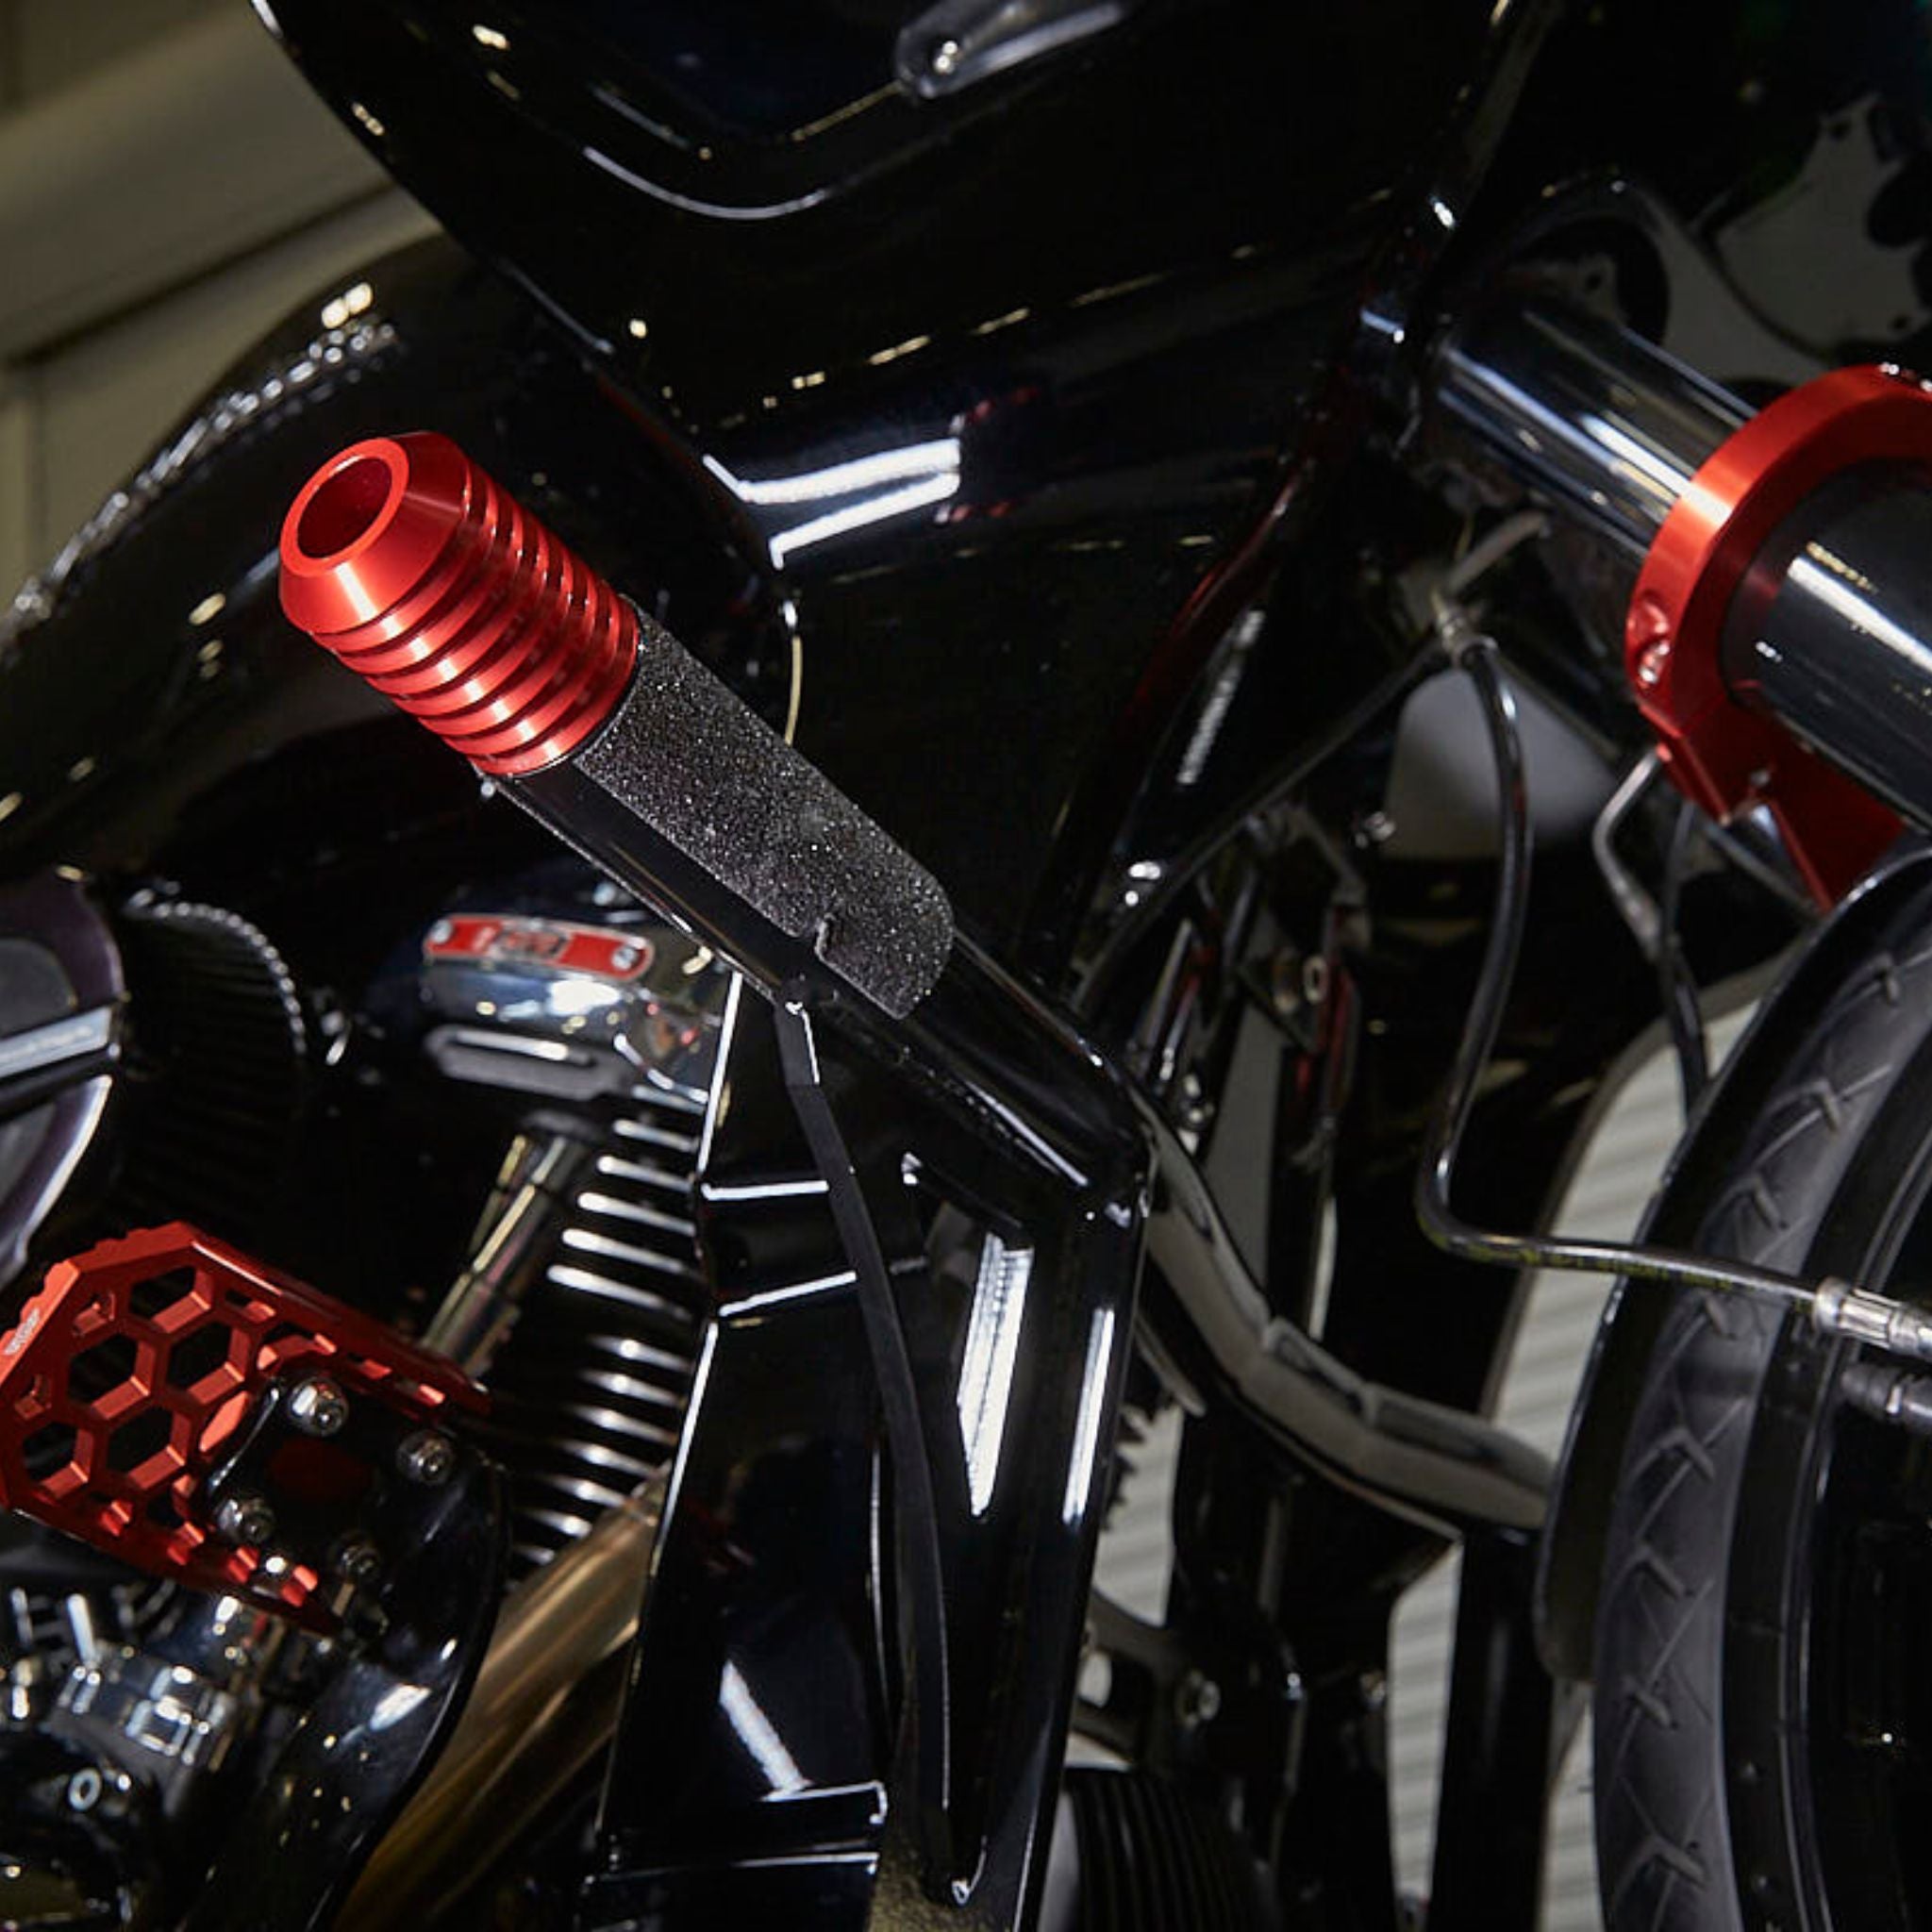 OG Highway Peg Crash Bar for Harley-Davidson Bagger